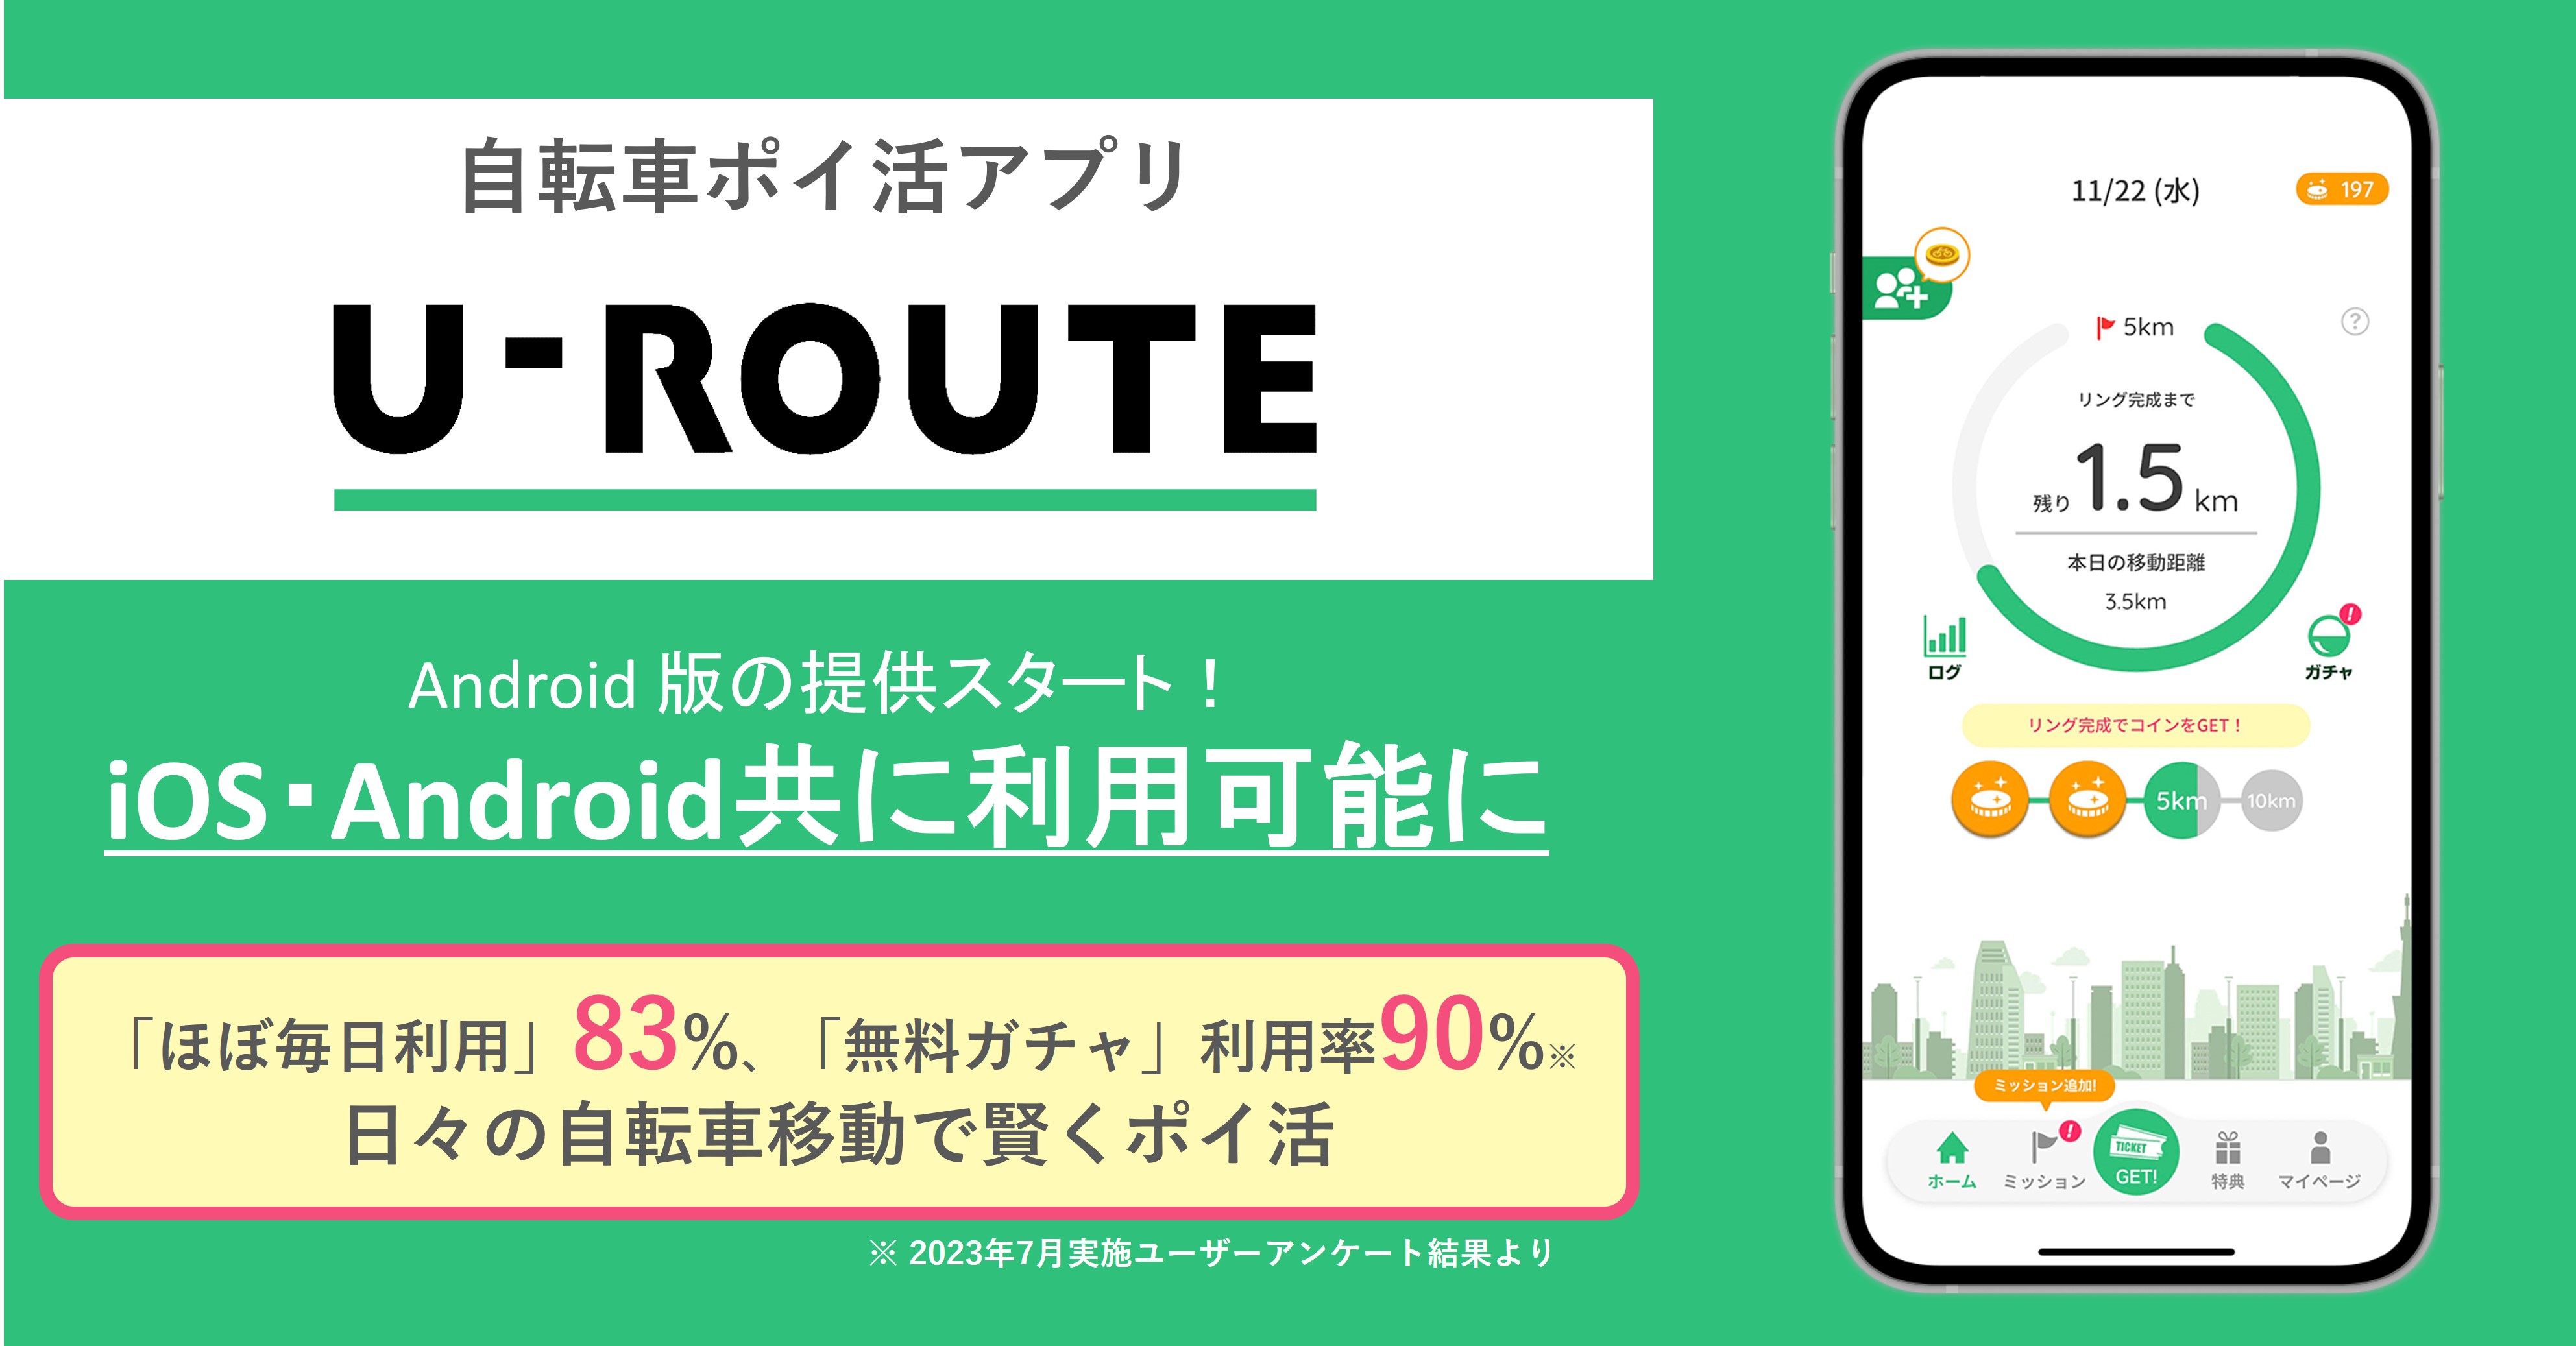 自転車ポイ活アプリ「U-ROUTE」、Android版をリリース